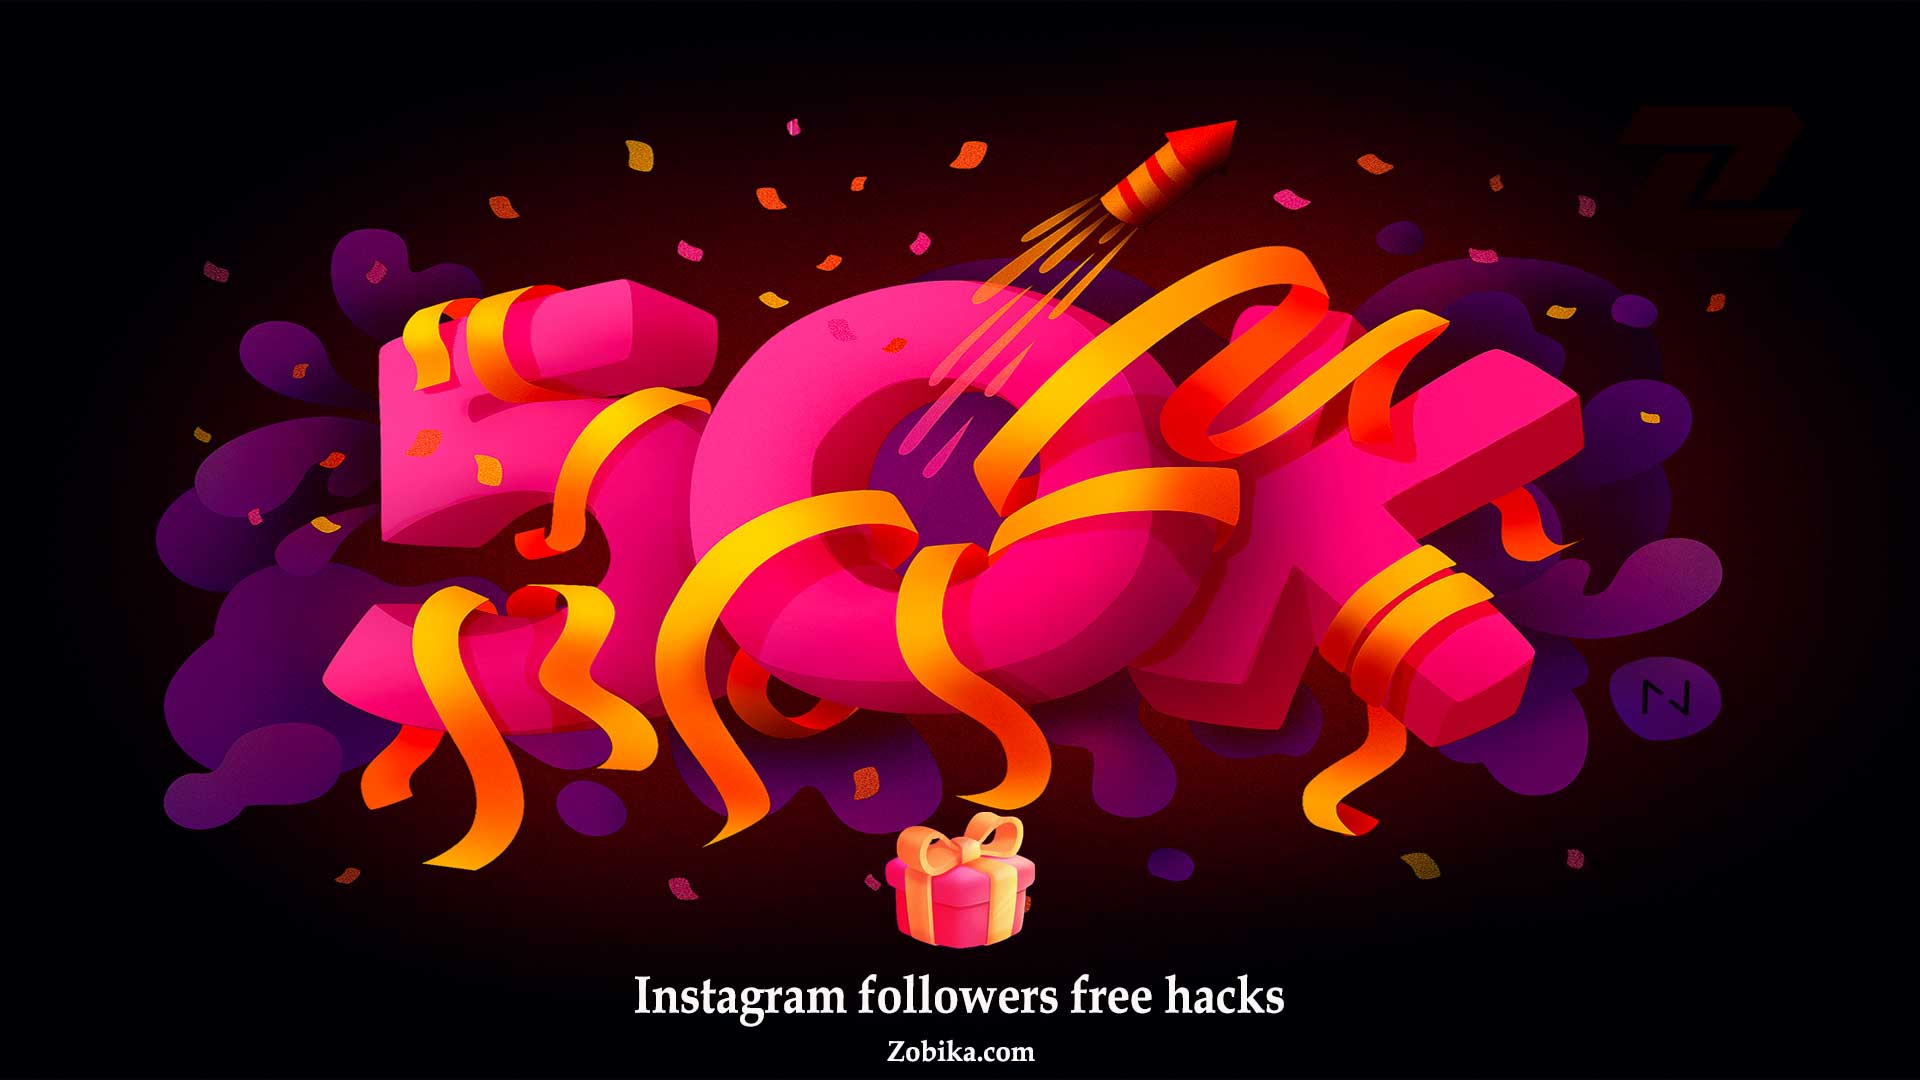 Instagram followers free hacks